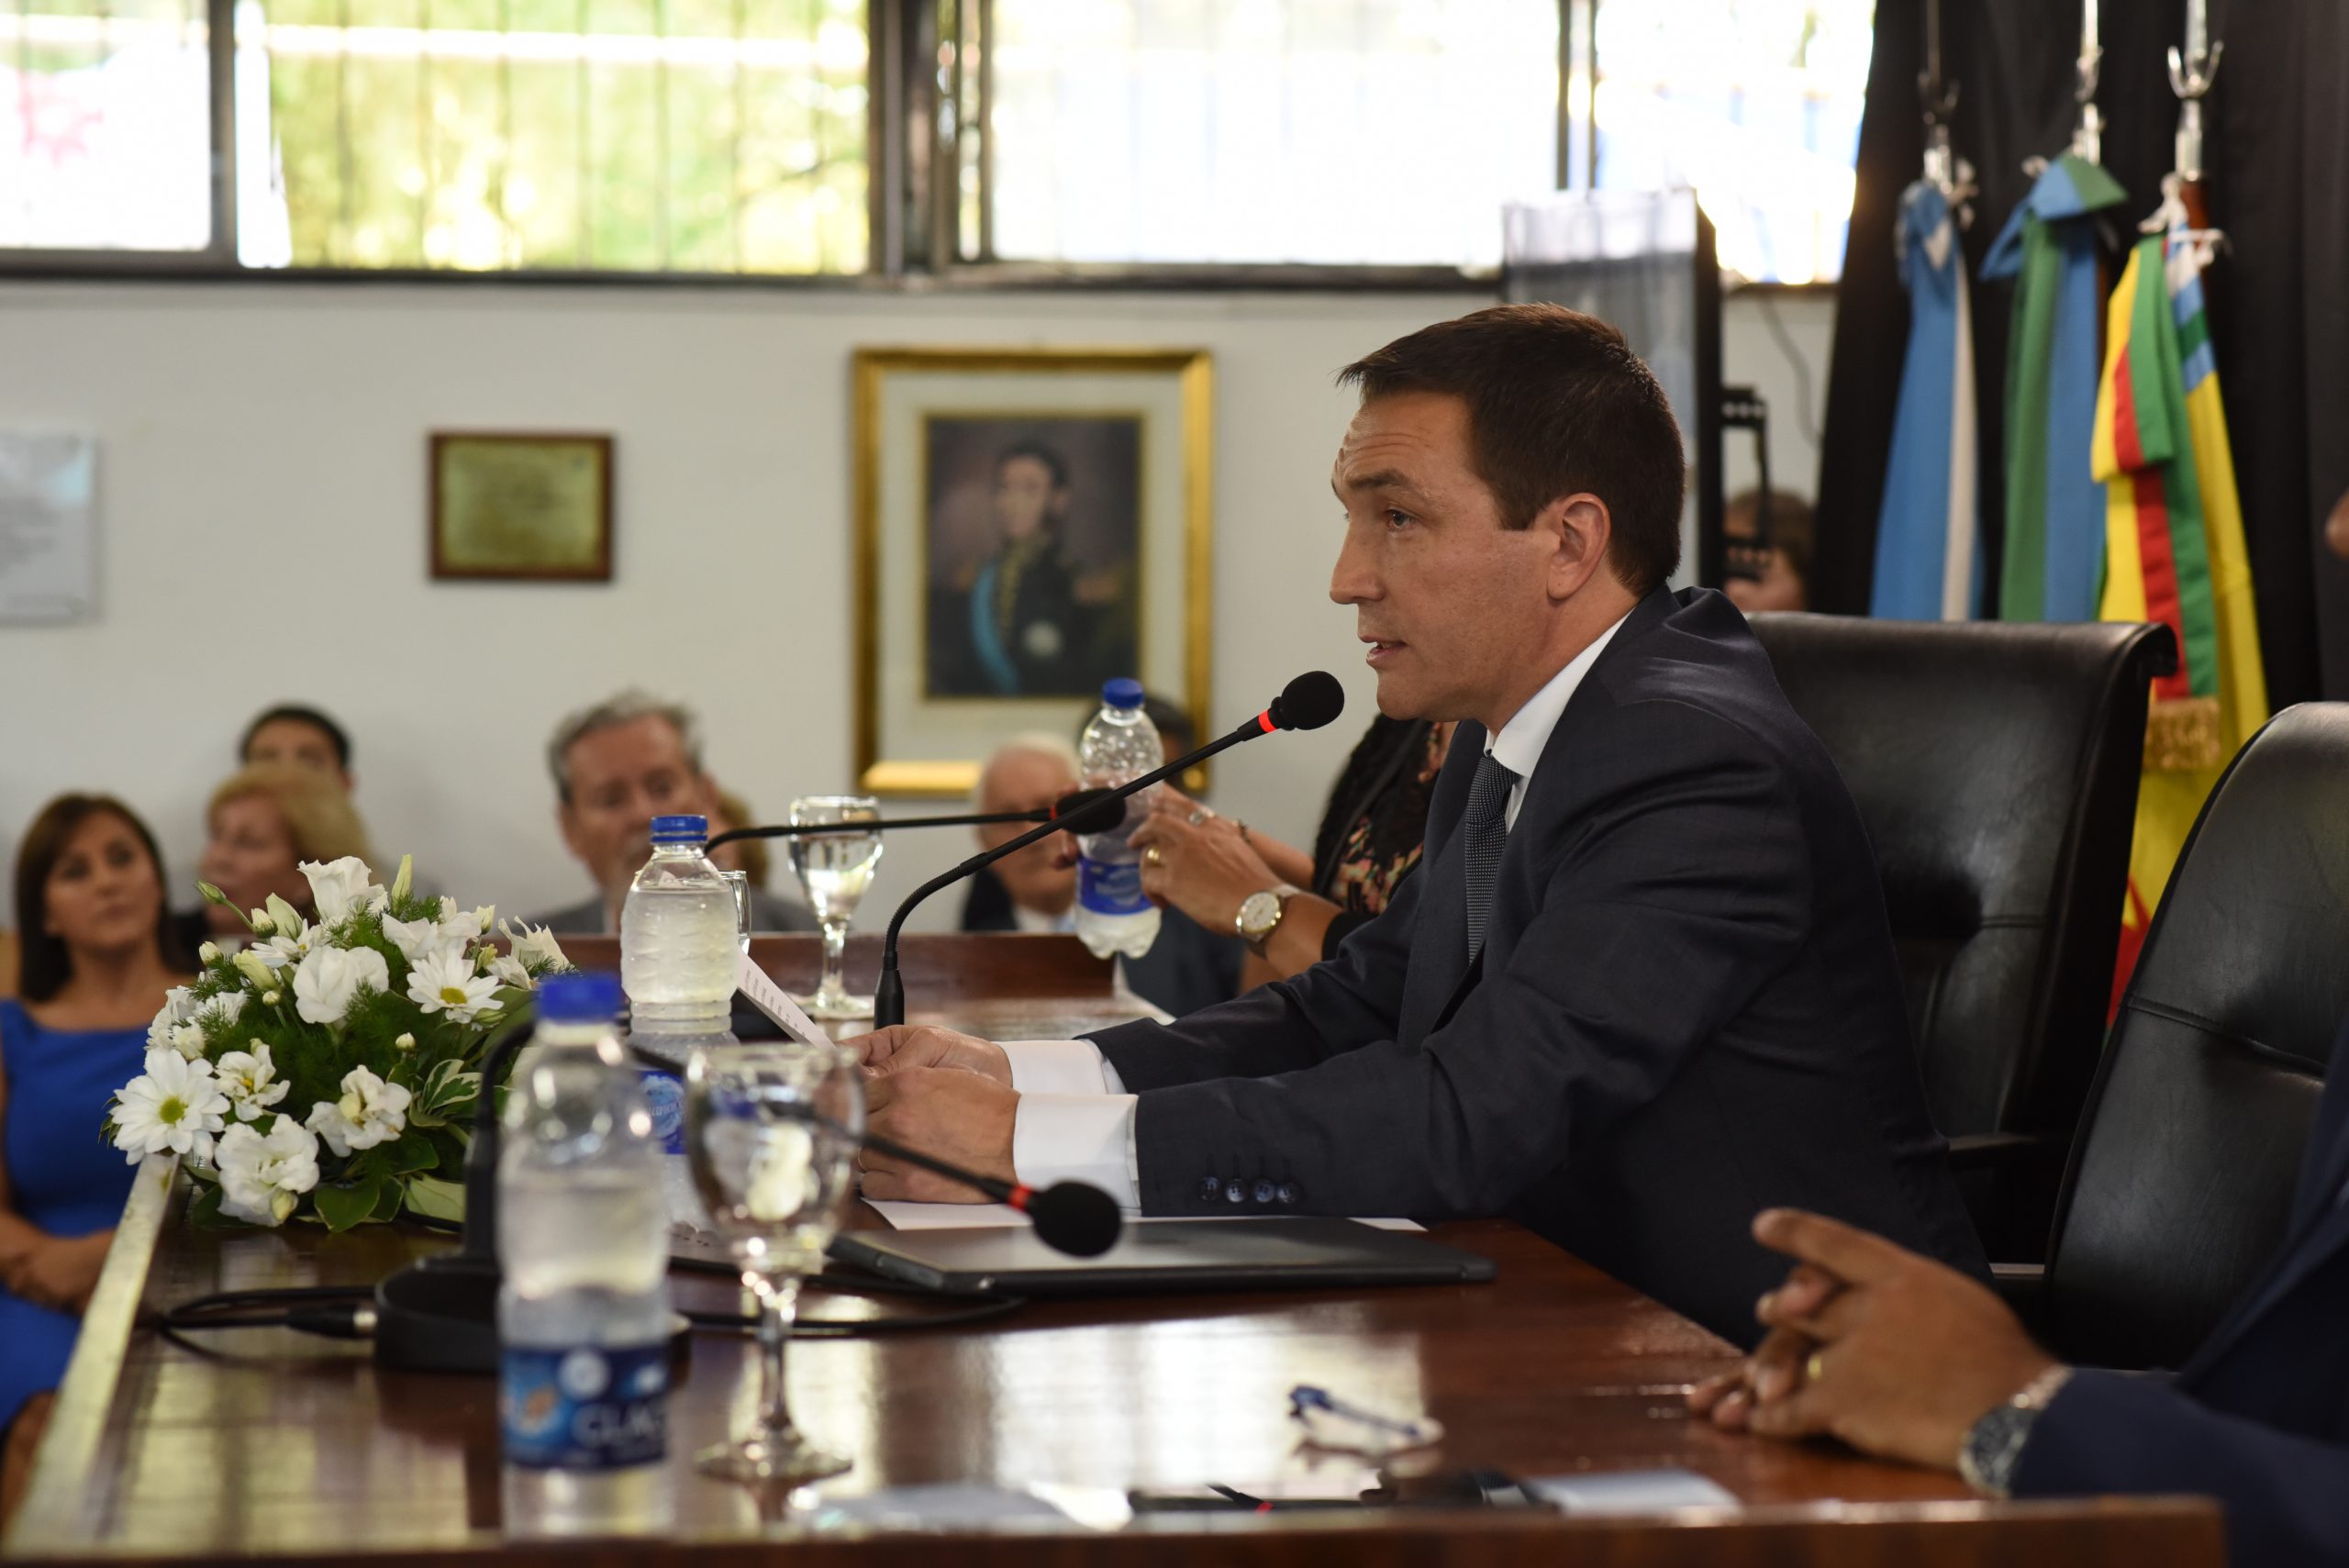  El intendente inauguró el período de sesiones ordinarias del Concejo Deliberante